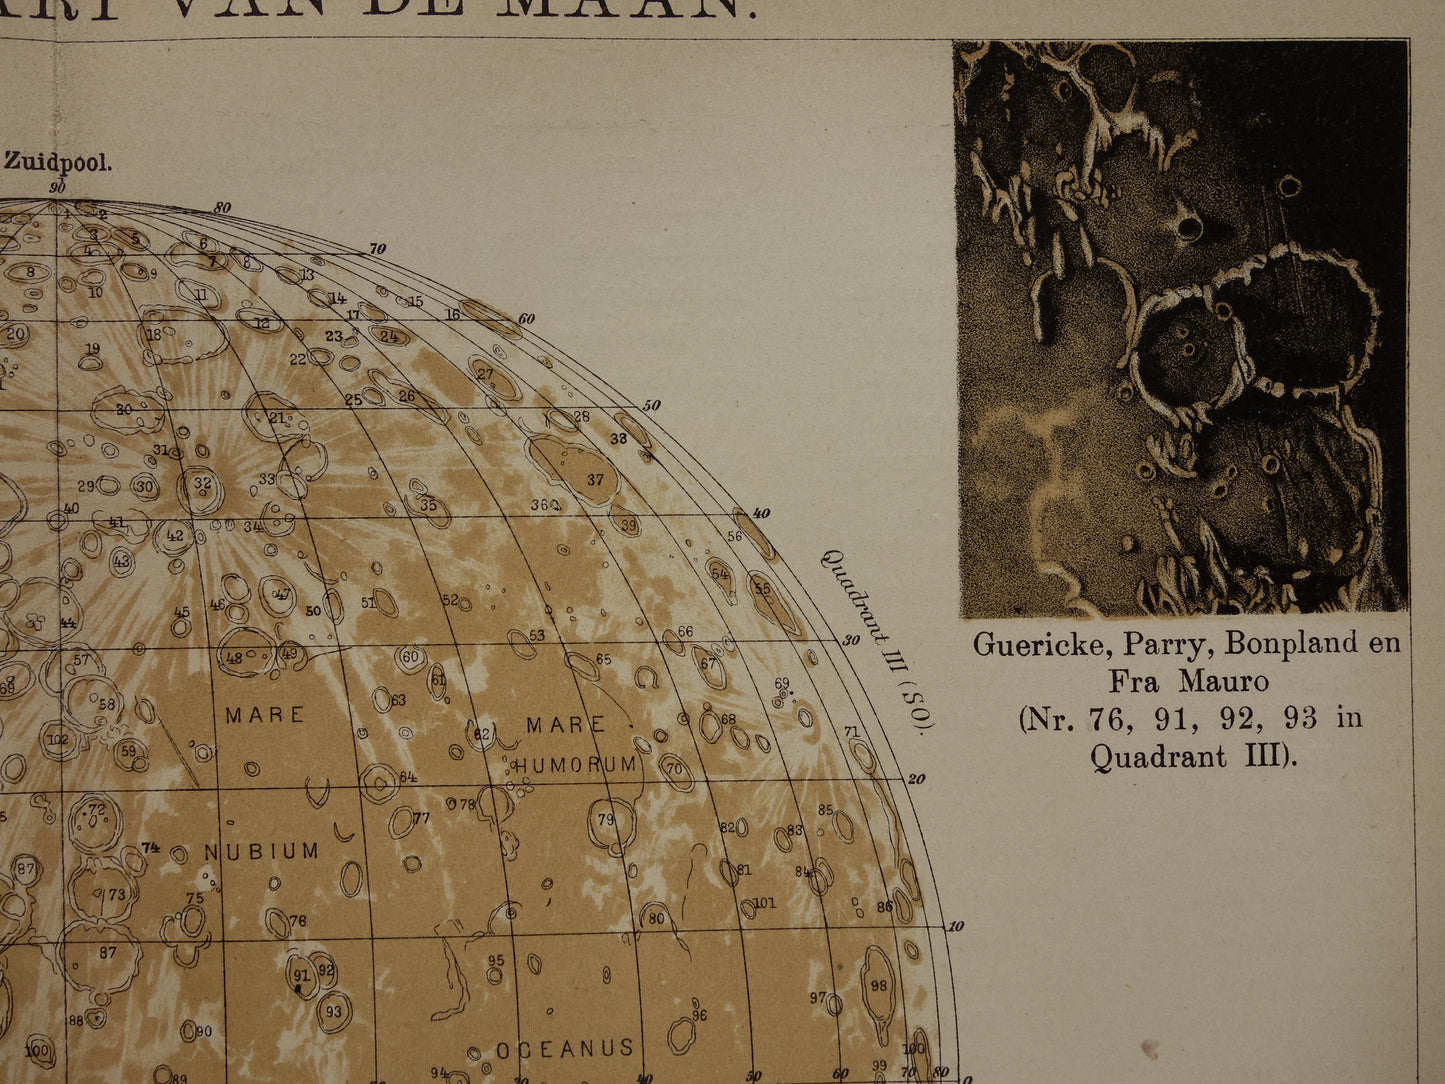 Oude kaart van de Maan originele antieke print zichtbare zijde van de maan - Nederlandse maankaart uit 1909